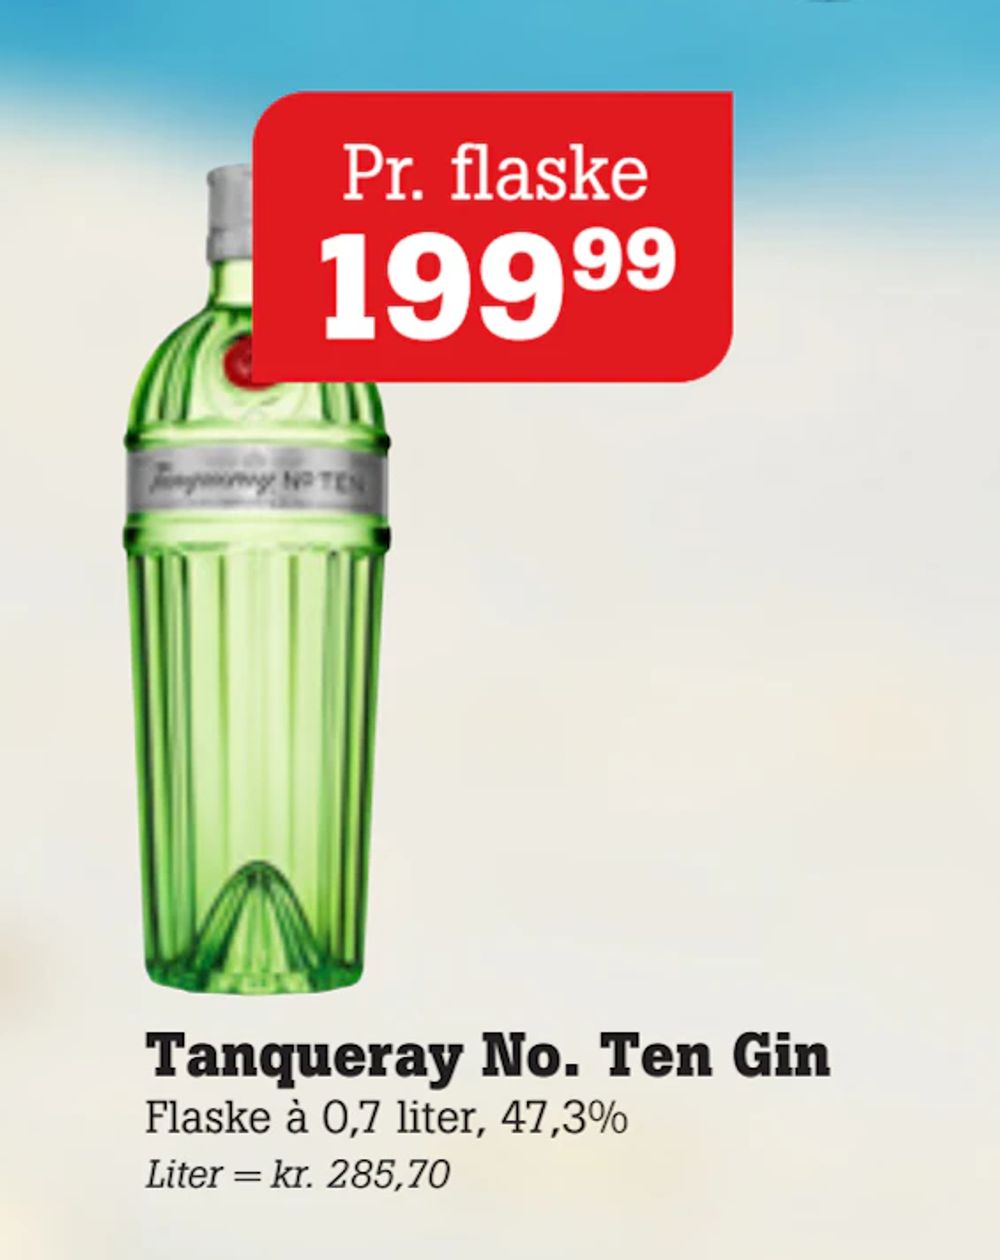 Tilbud på Tanqueray No. Ten Gin fra Poetzsch Padborg til 199,99 kr.